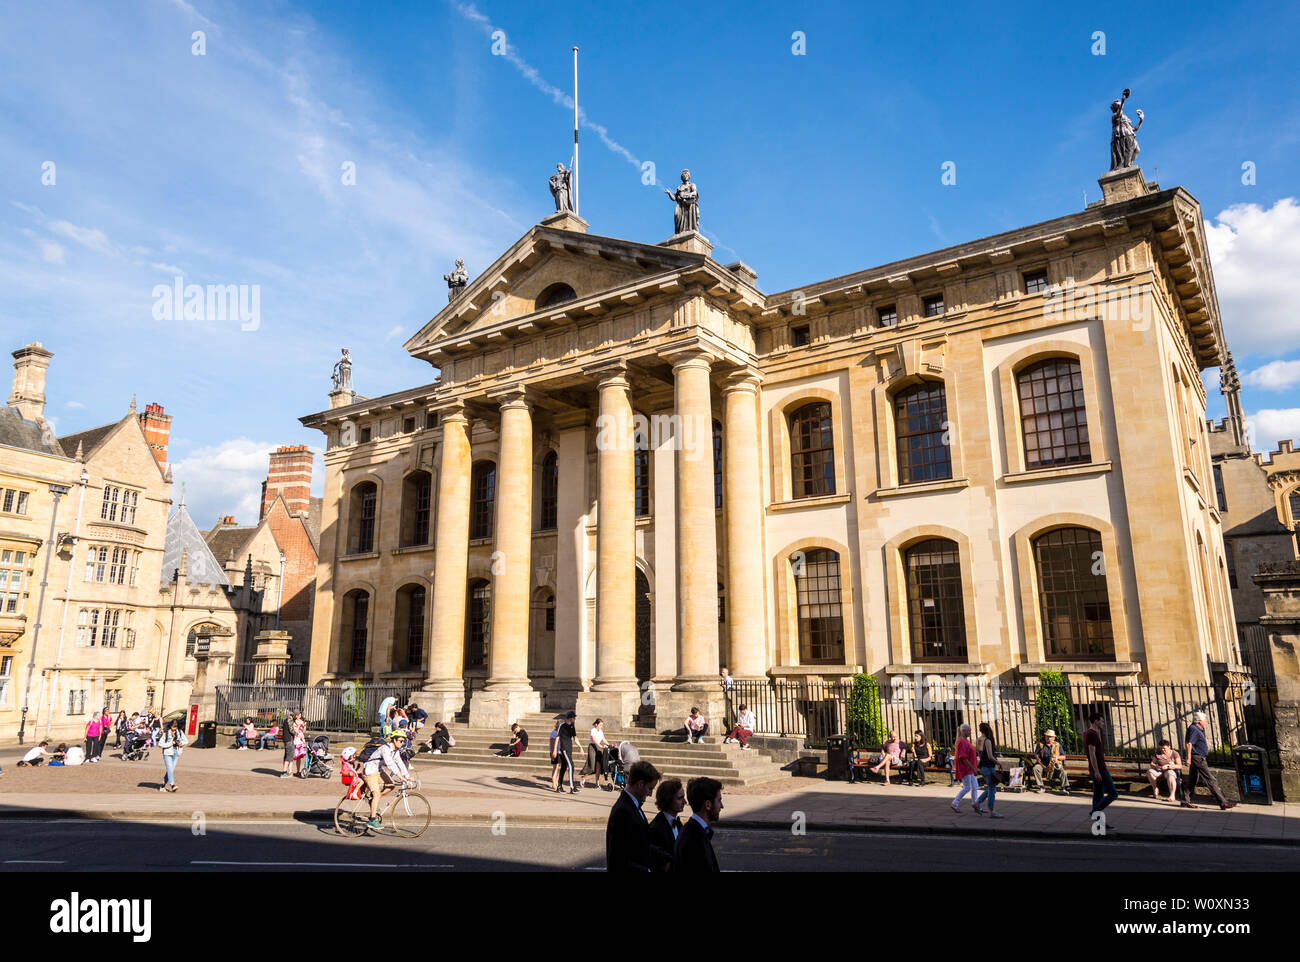 Les gens s'assoient sur les marches à l'avant du bâtiment Clarendon ensoleillée aux couleurs vives sur une belle journée d'été dans la célèbre ville universitaire d'Oxford Banque D'Images